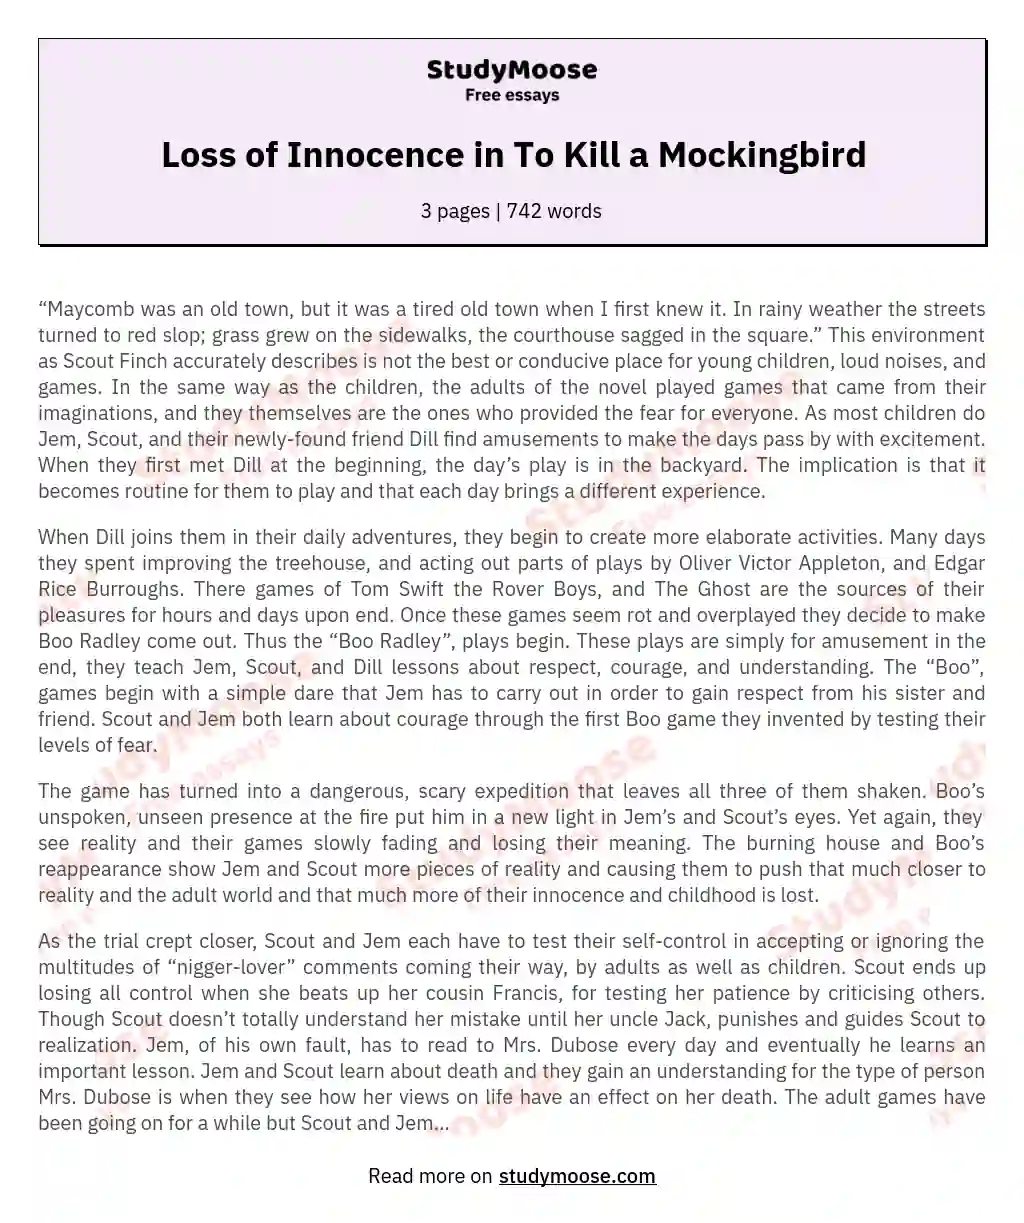 Loss of Innocence in To Kill a Mockingbird essay